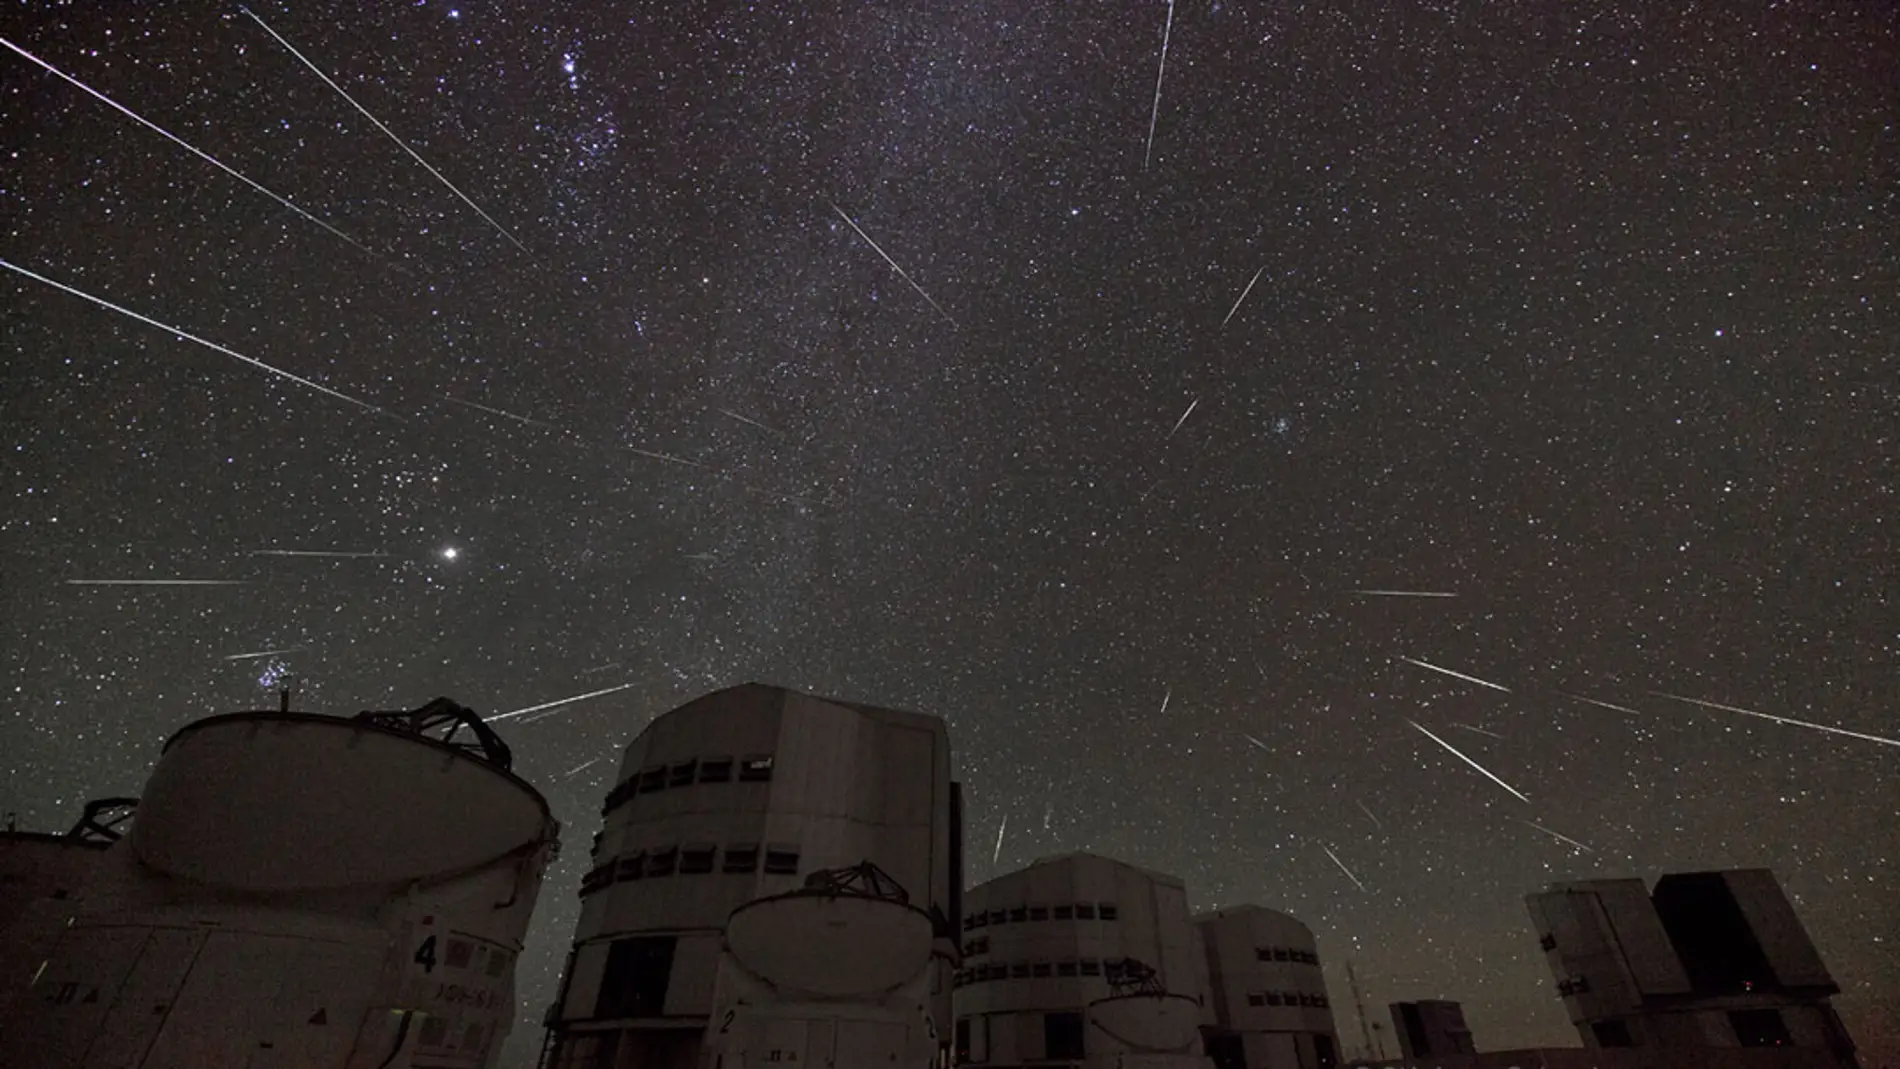 Meteoros capturados en una lluvia de estrellas. Aquí se aprecia el concepto de radiante: el lugar desde el que parecen surgir los meteoros y cómo son más vistosos cuanto más se alejan de él